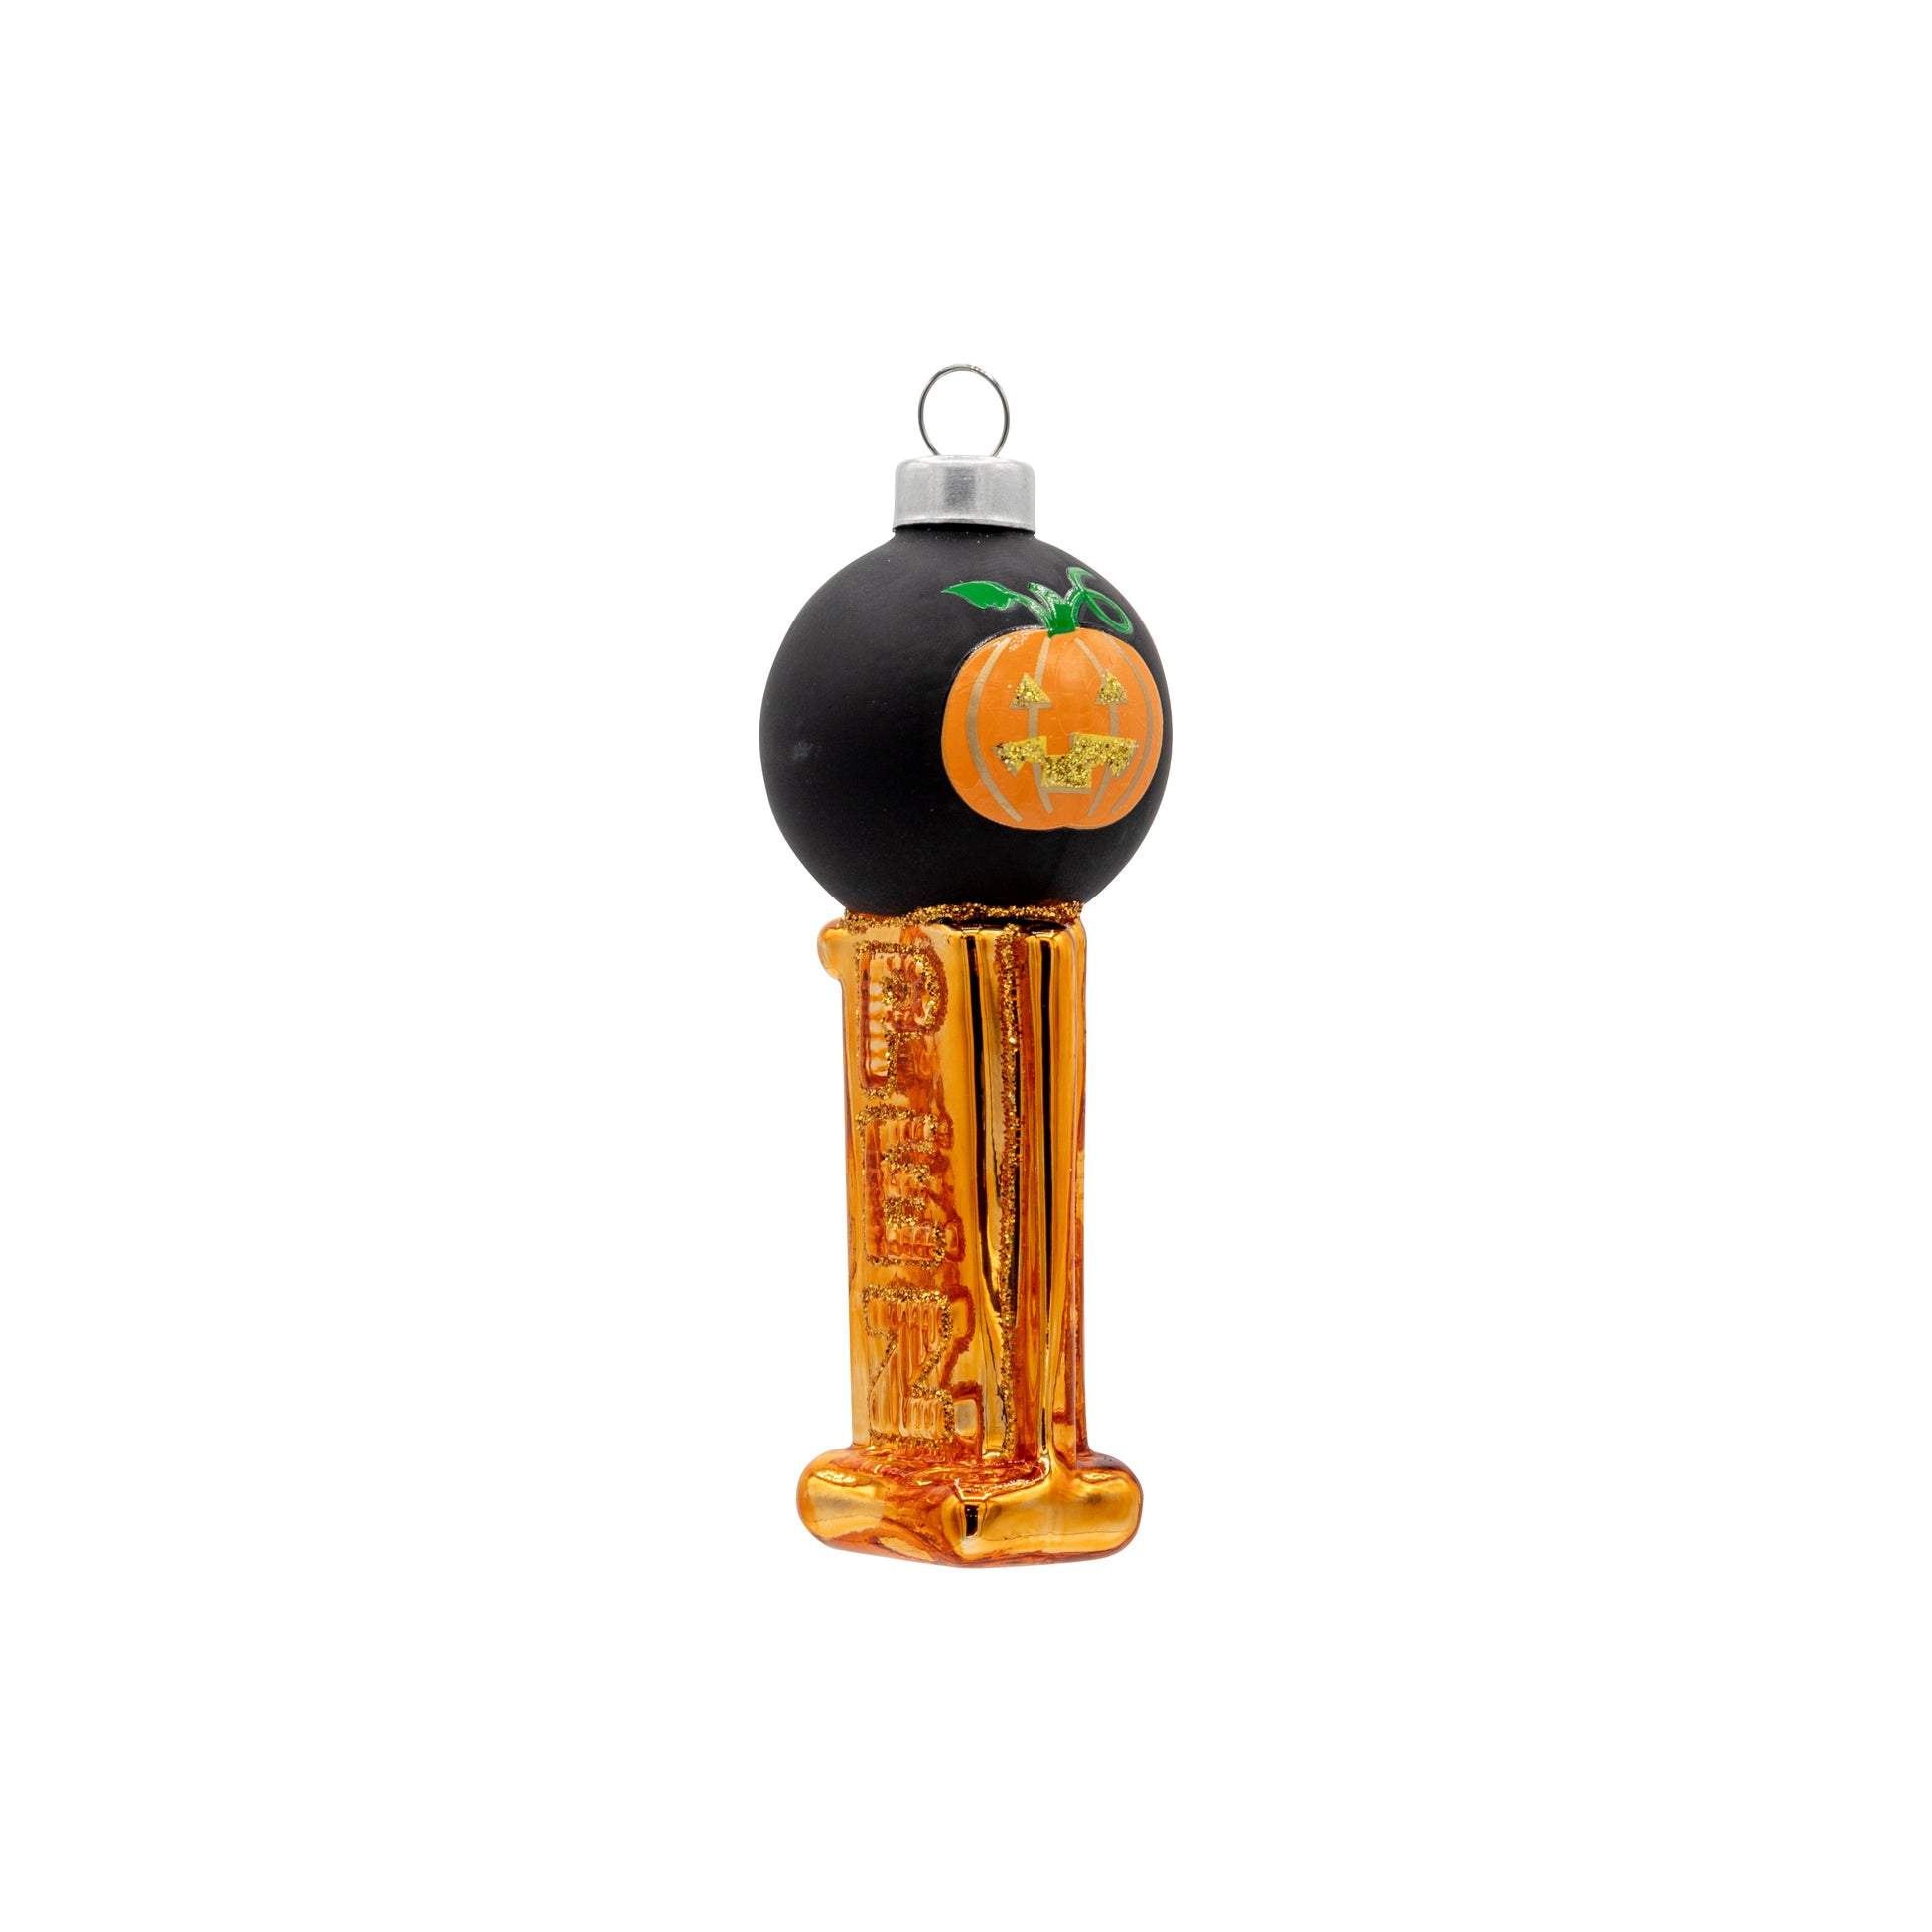 Side image - Pumpkin Mini PEZ© Dispenser - (PEZ candy ornament)